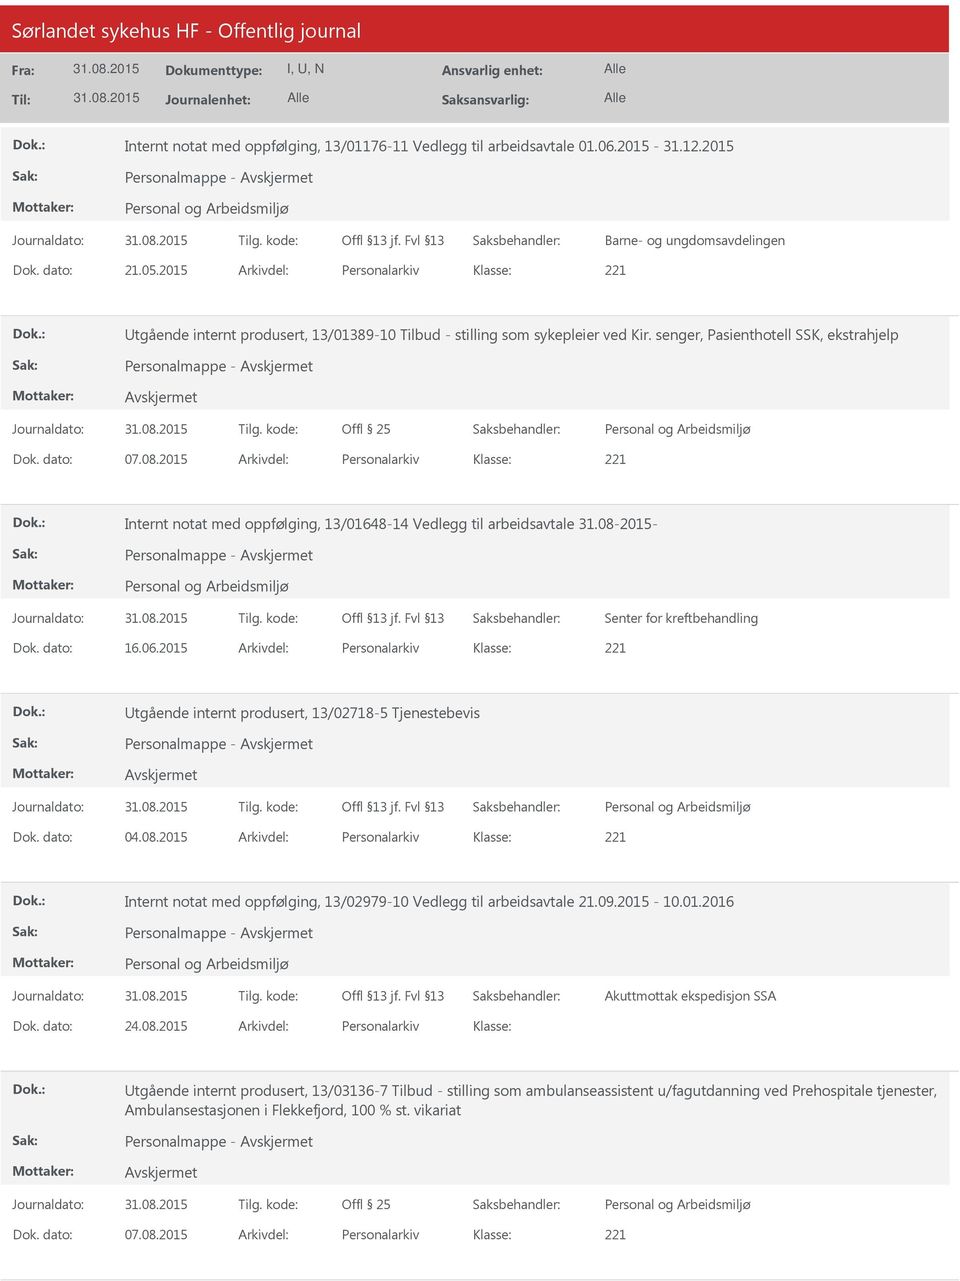 2015 Arkivdel: Personalarkiv Internt notat med oppfølging, 13/01648-14 Vedlegg til arbeidsavtale 31.08-2015- Senter for kreftbehandling Dok. dato: 16.06.